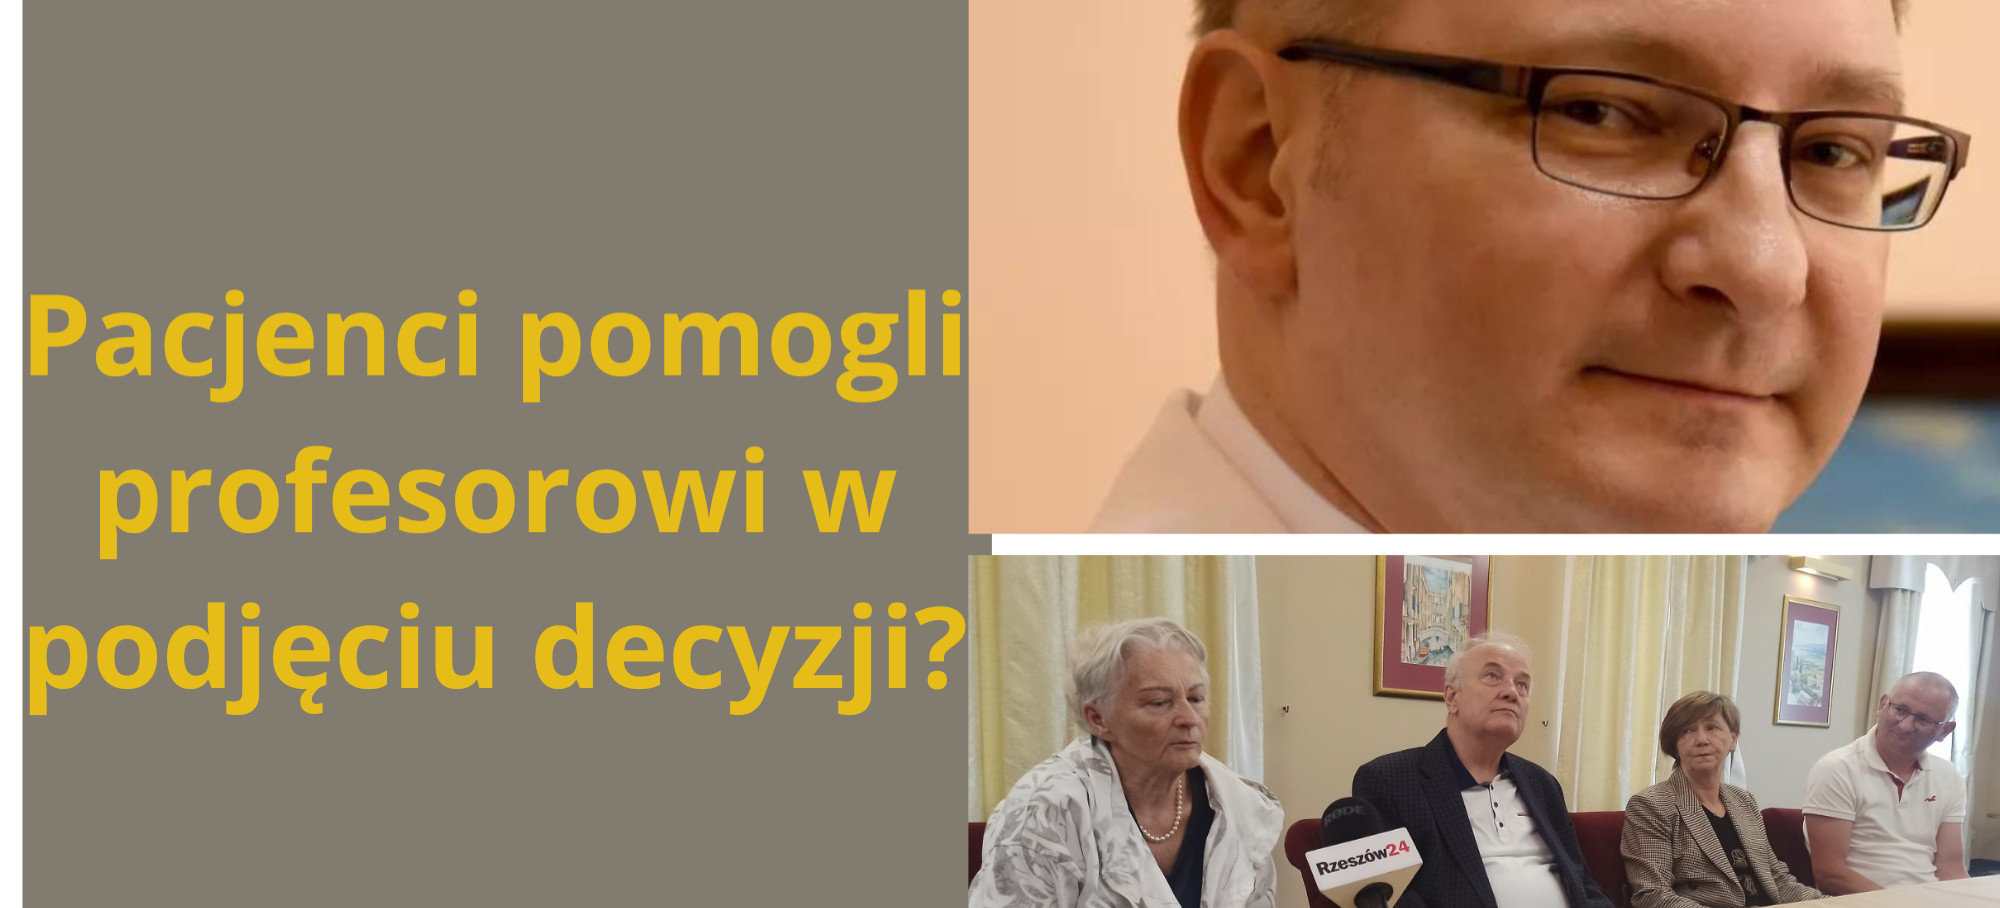 RZESZÓW. Profesor Krzysztof Gutkowski wydał oświadczenie!